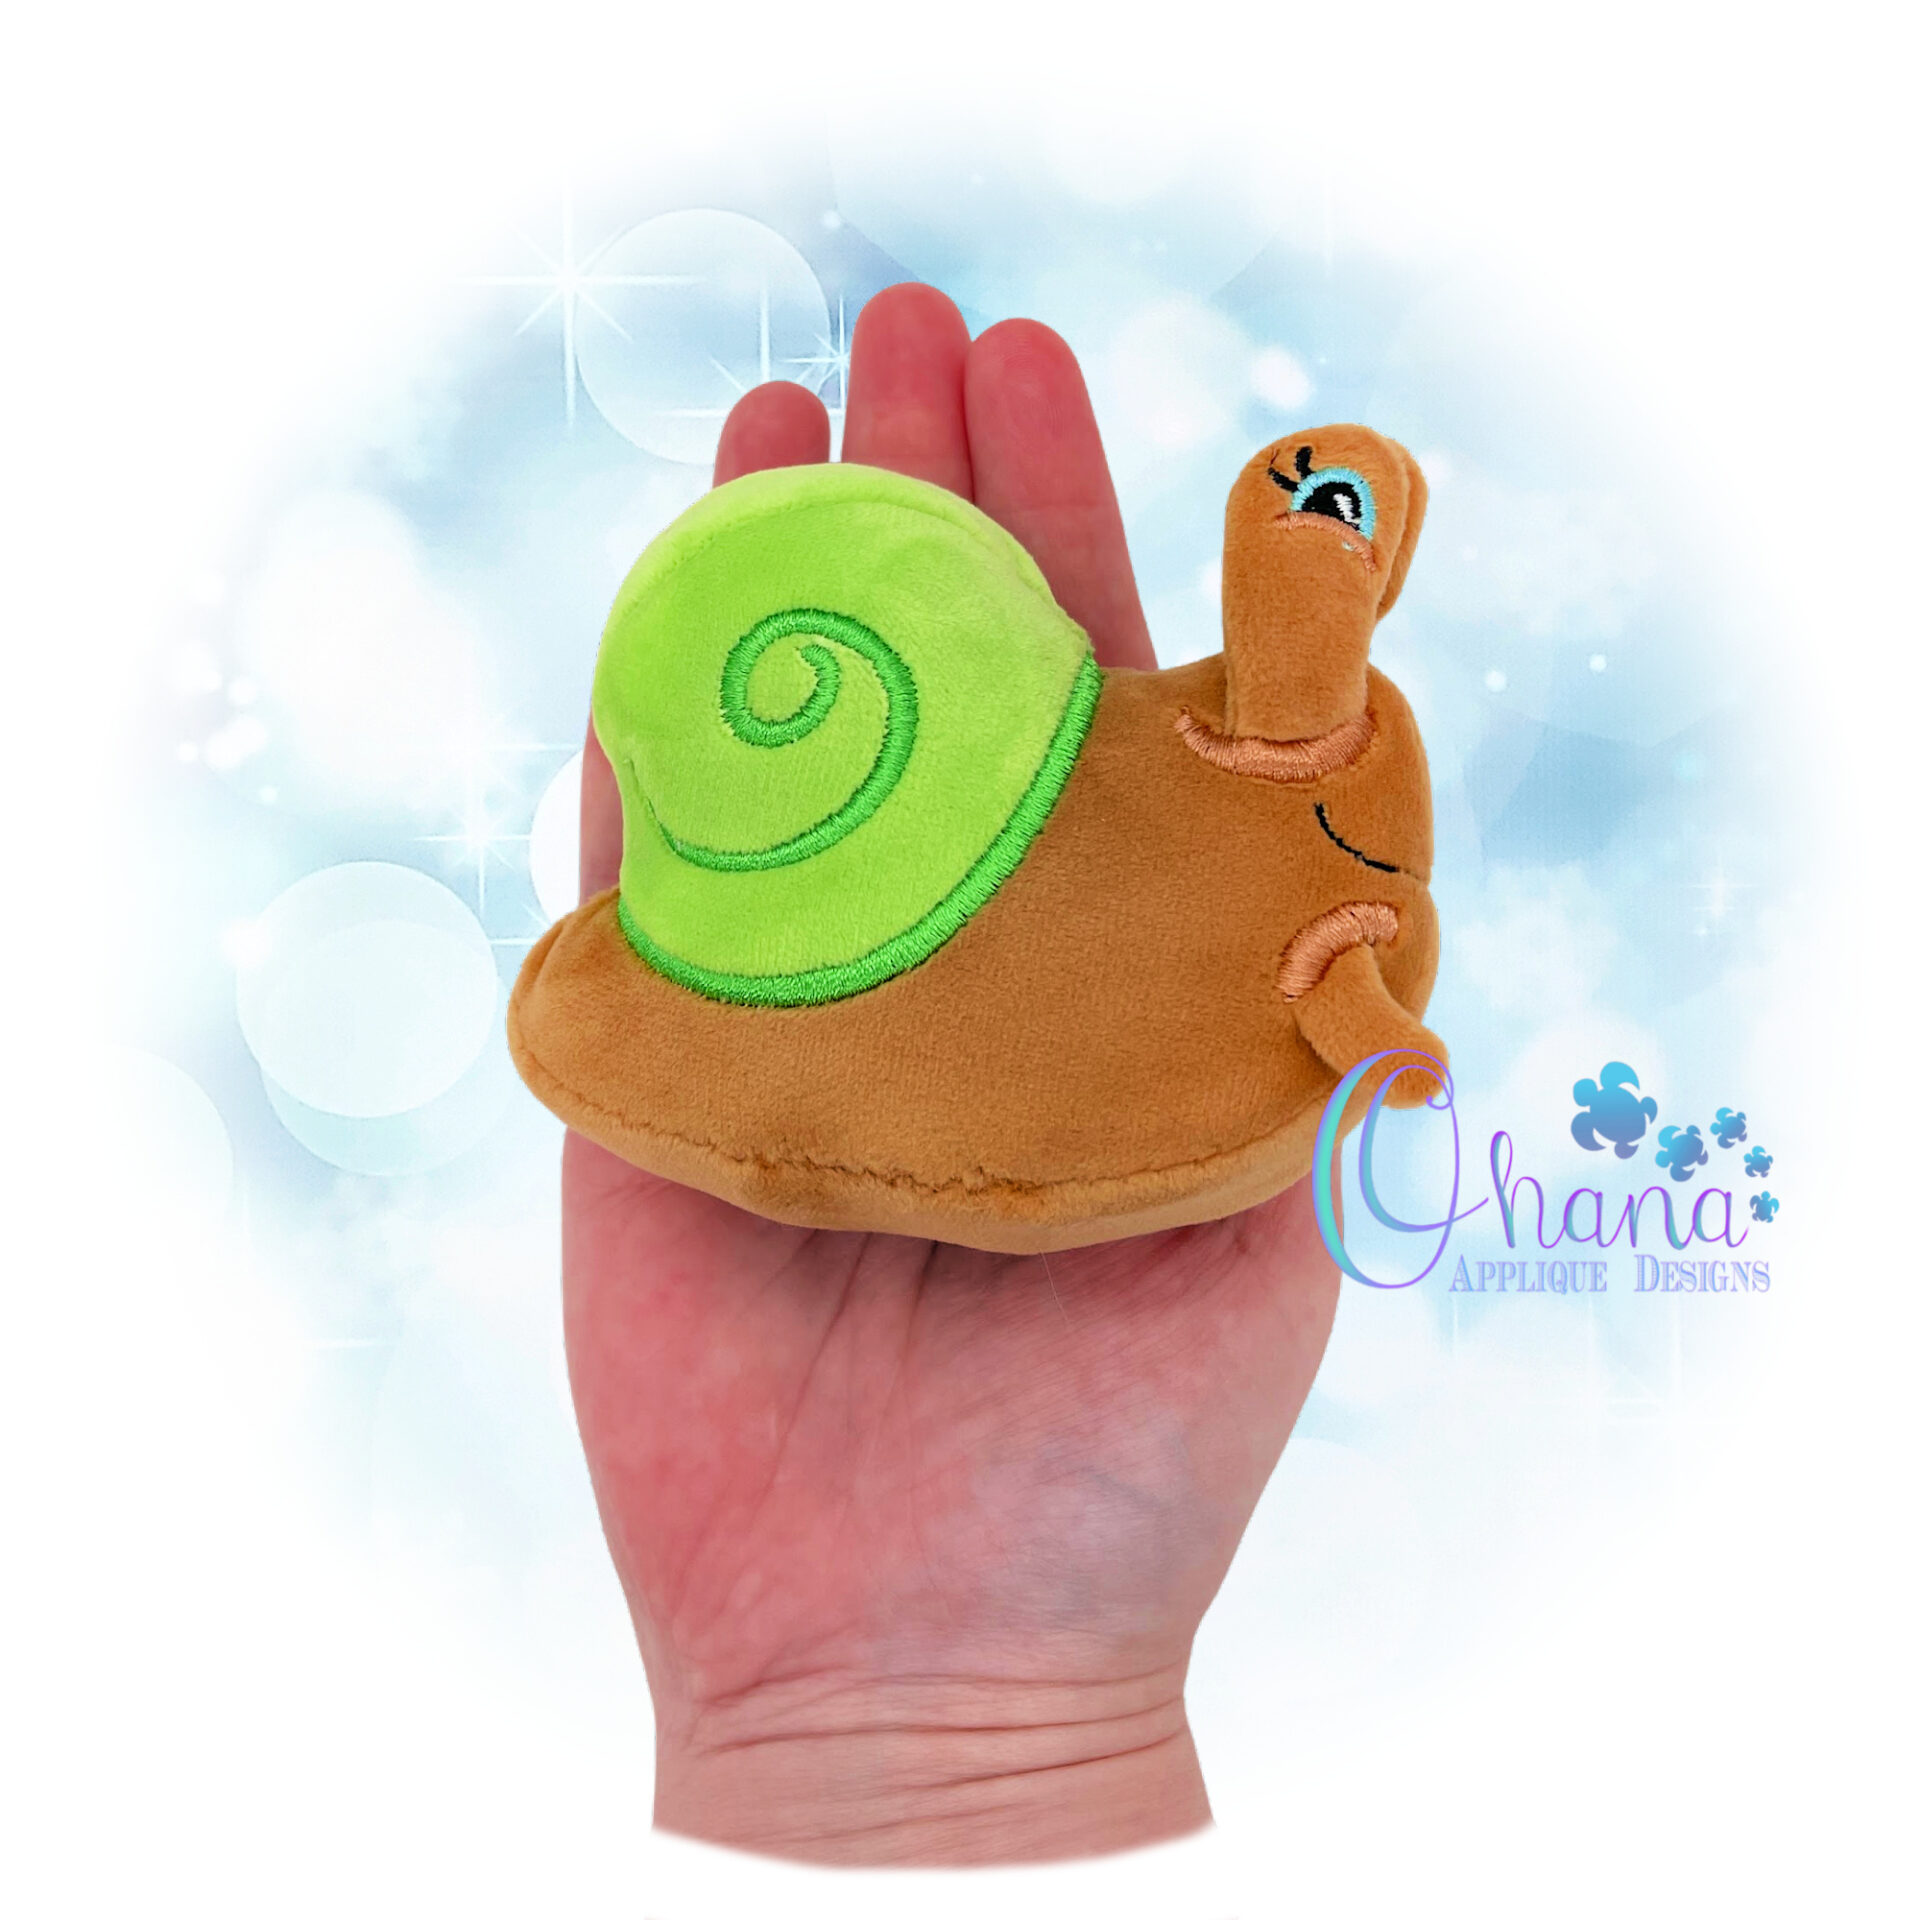 3D Snail Stuffie